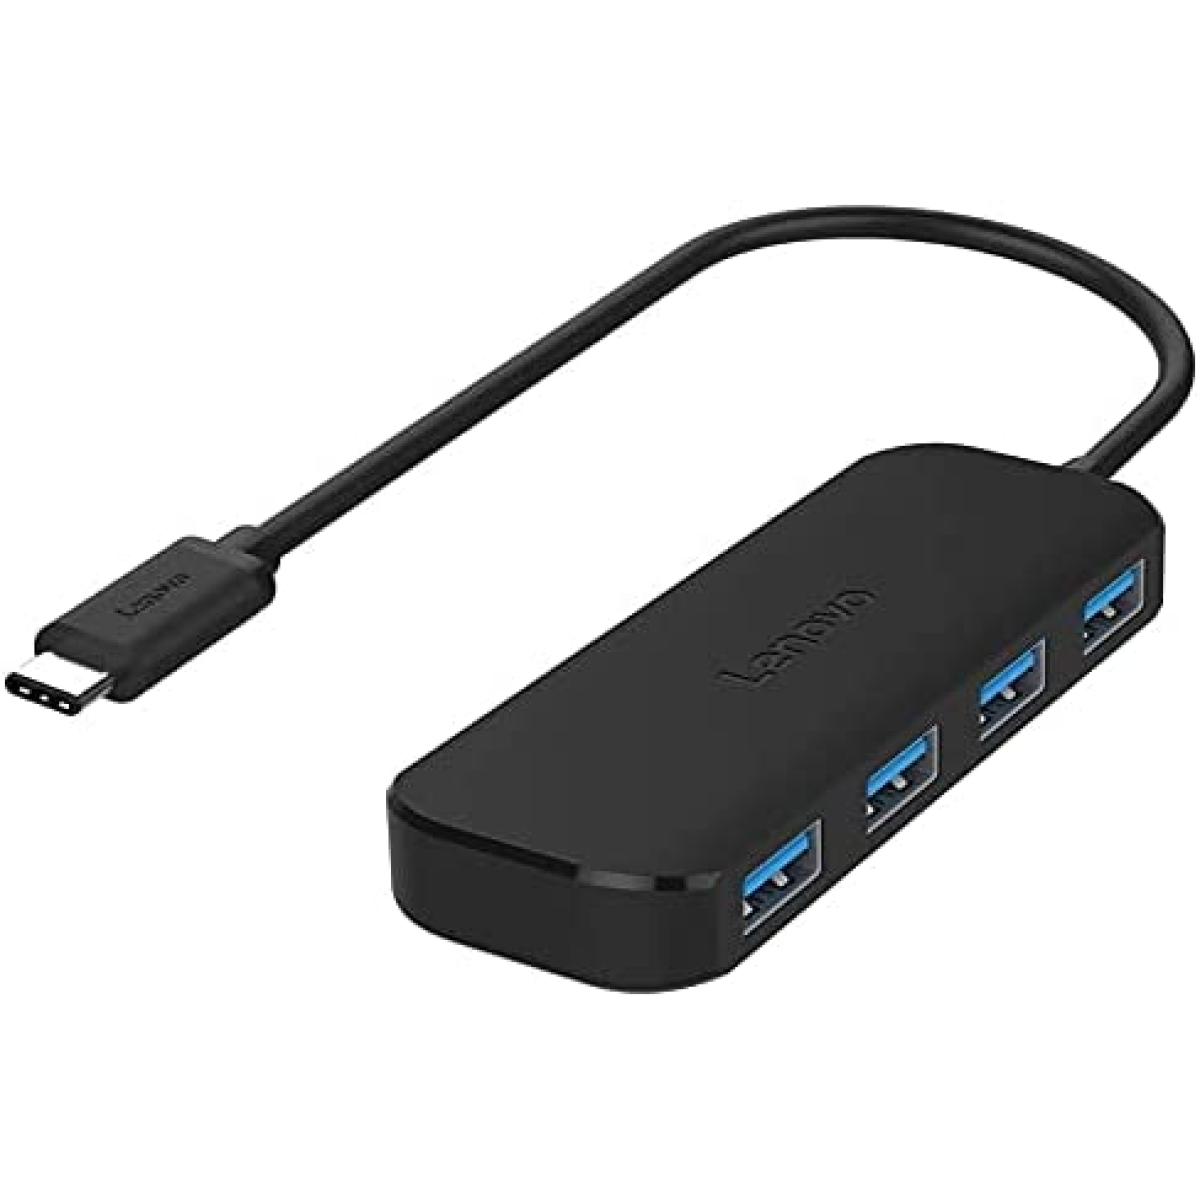 Vejrudsigt forvrængning femte Lenovo USB Type C To 4 Port USB 3.0 Data Hub | Green Dara Stars for  Computers